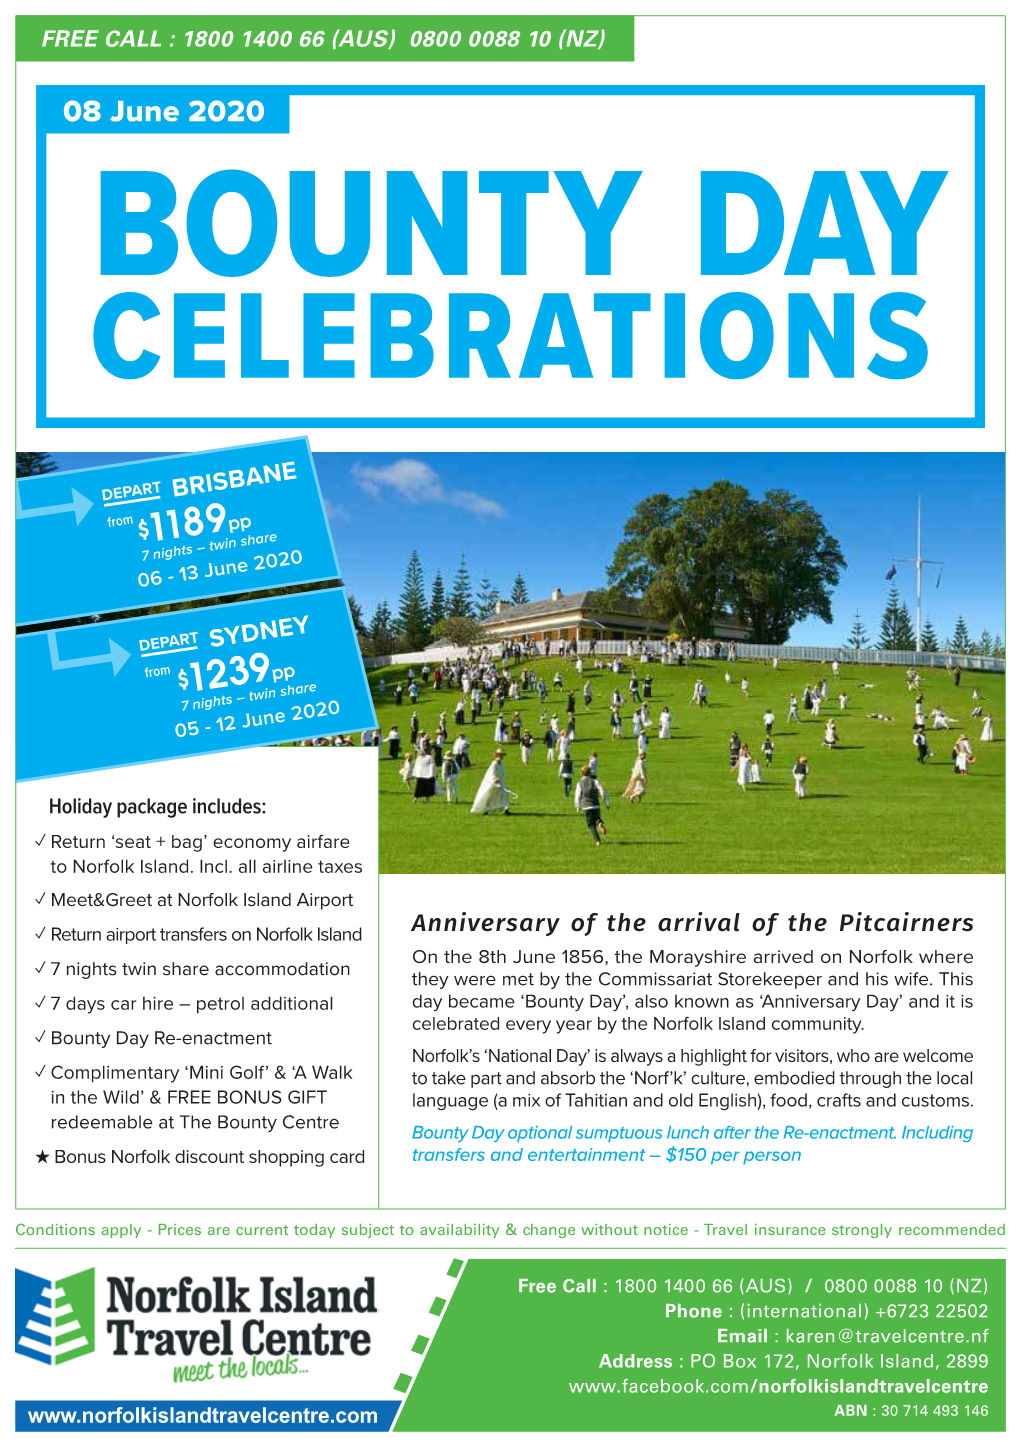 Bounty Day Celebrations 08 June 2020